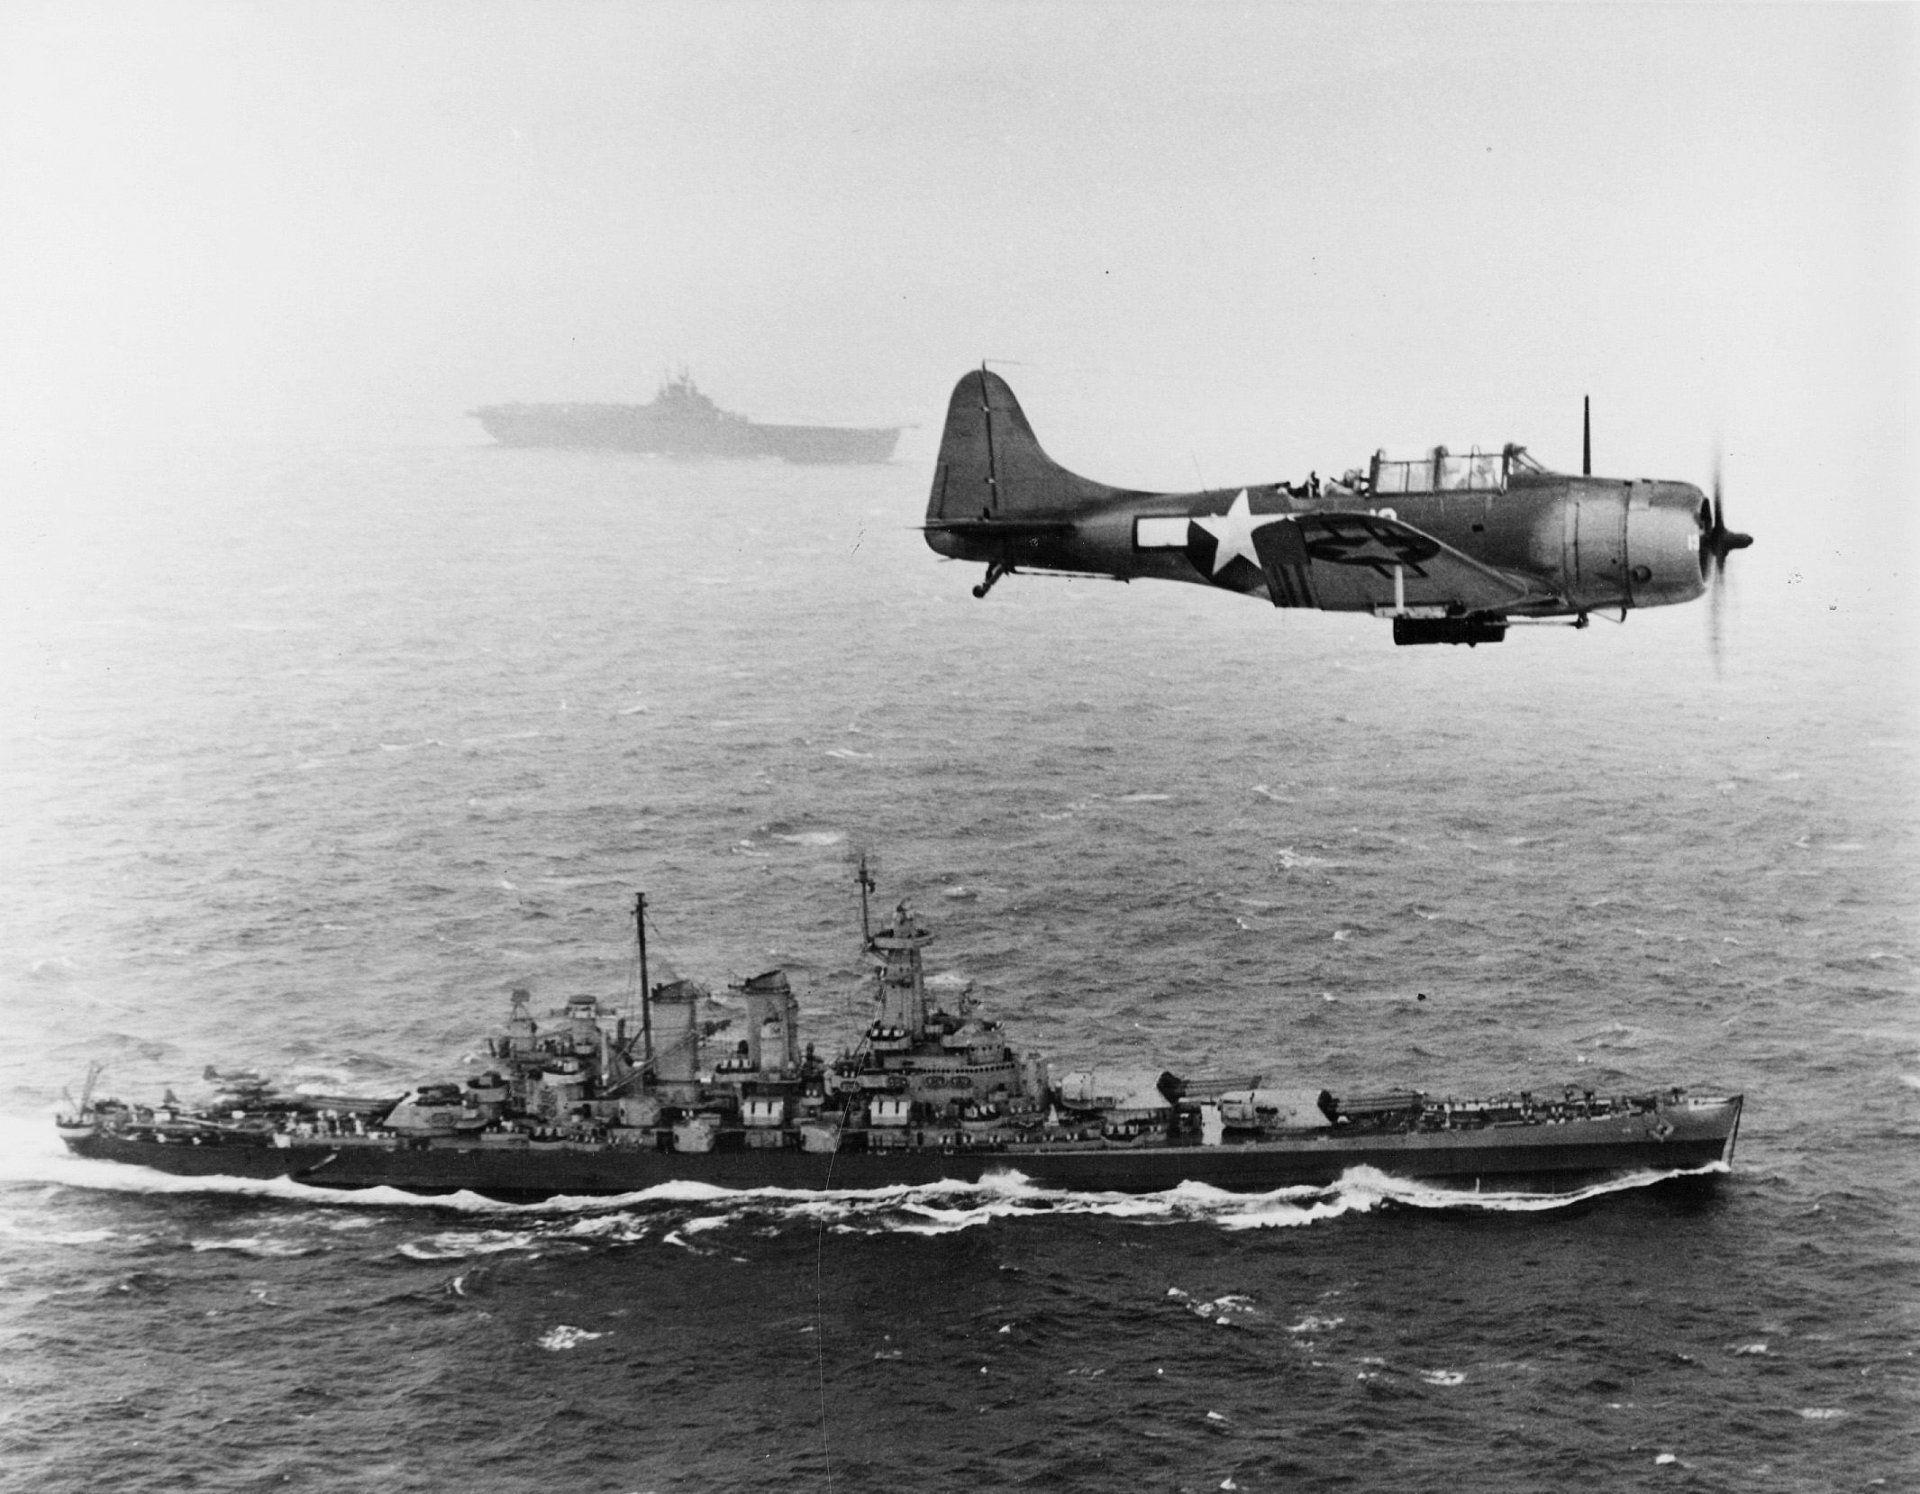 bomber aircraft carrier away the second world war pacific ocean HD